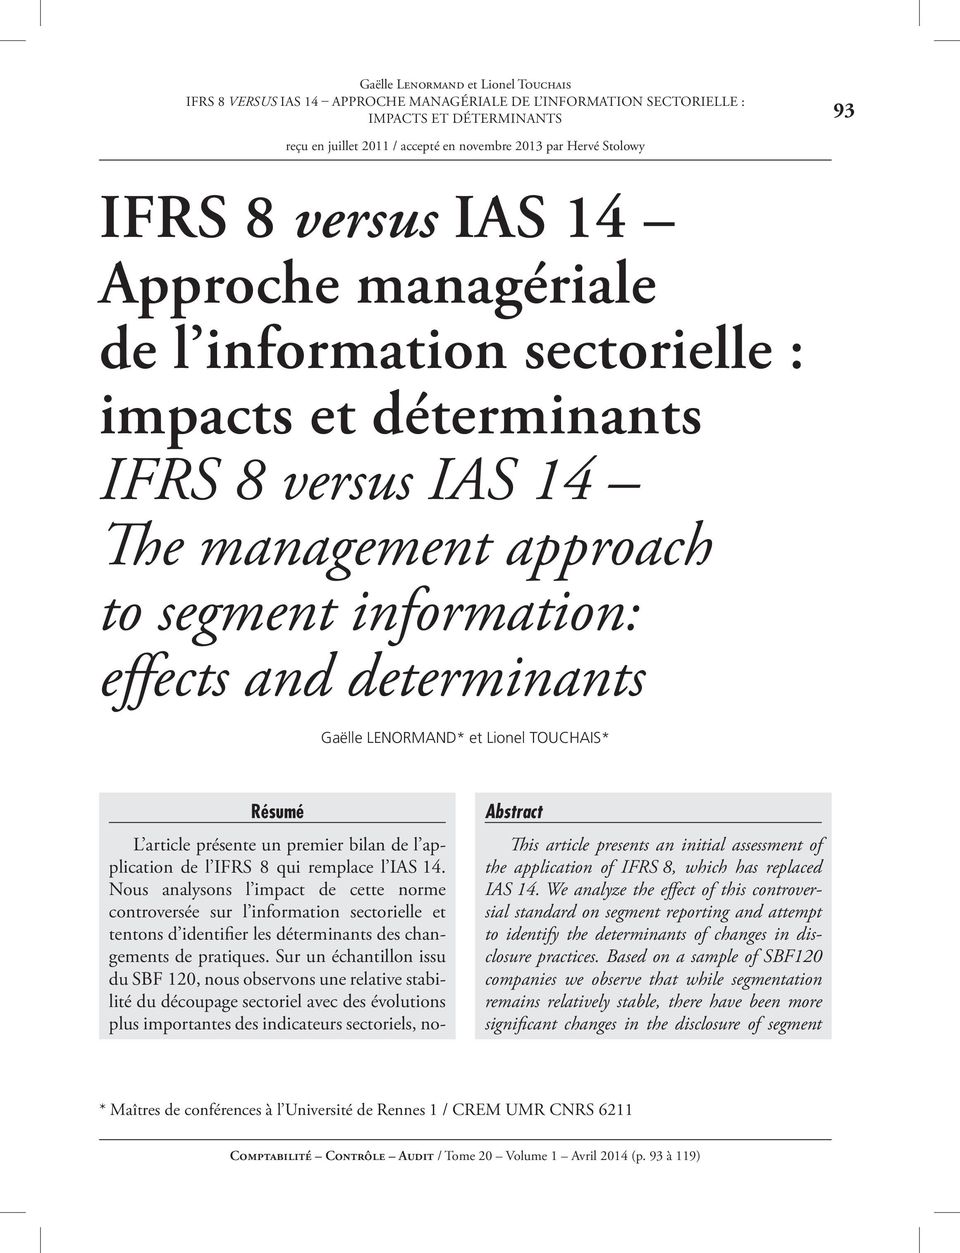 application de l IFRS 8 qui remplace l IAS 14. Nous analysons l impact de cette norme controversée sur l information sectorielle et tentons d identifier les déterminants des changements de pratiques.